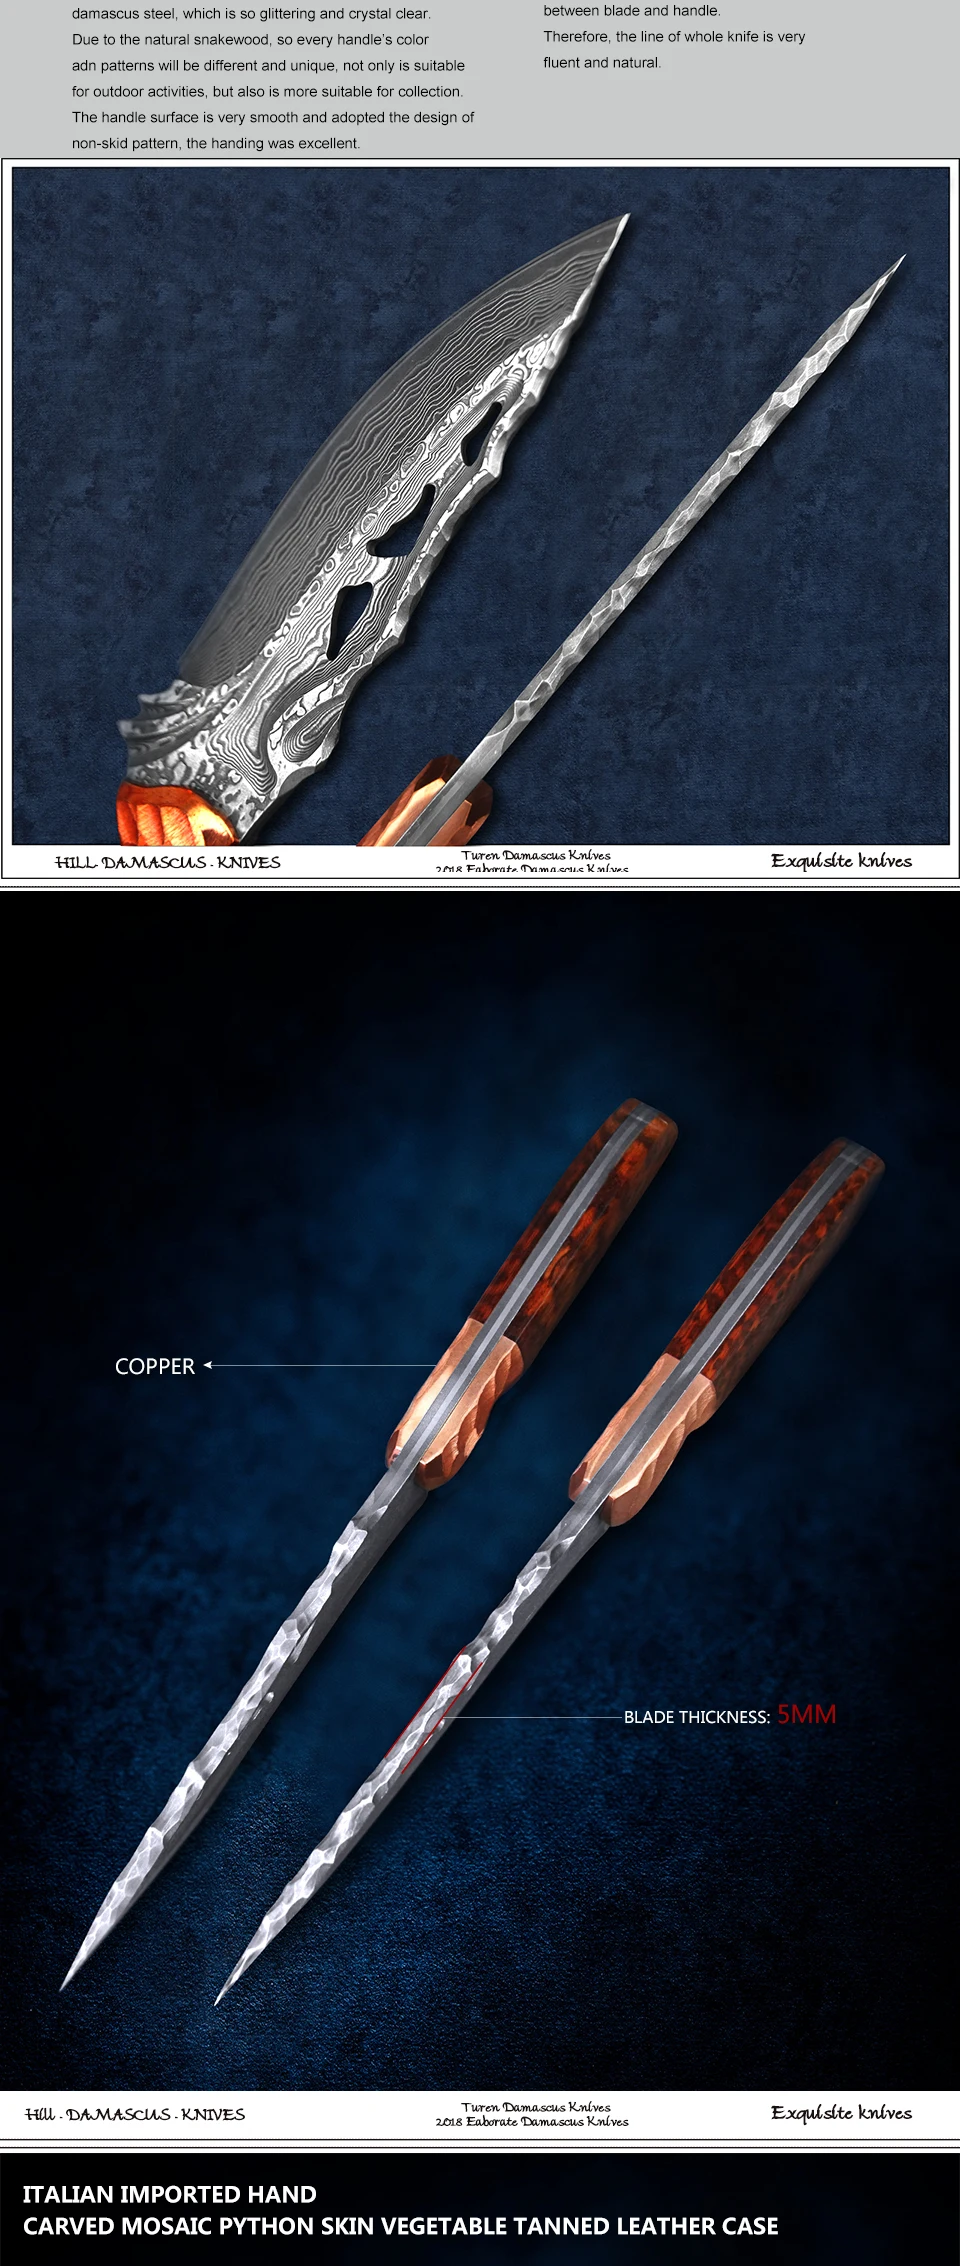 TUREN-Full Tang Дамасская сталь охотничий нож тактический нож с фиксированным лезвием Snakewood Ручка Открытый инструмент для кемпинга с оболочкой